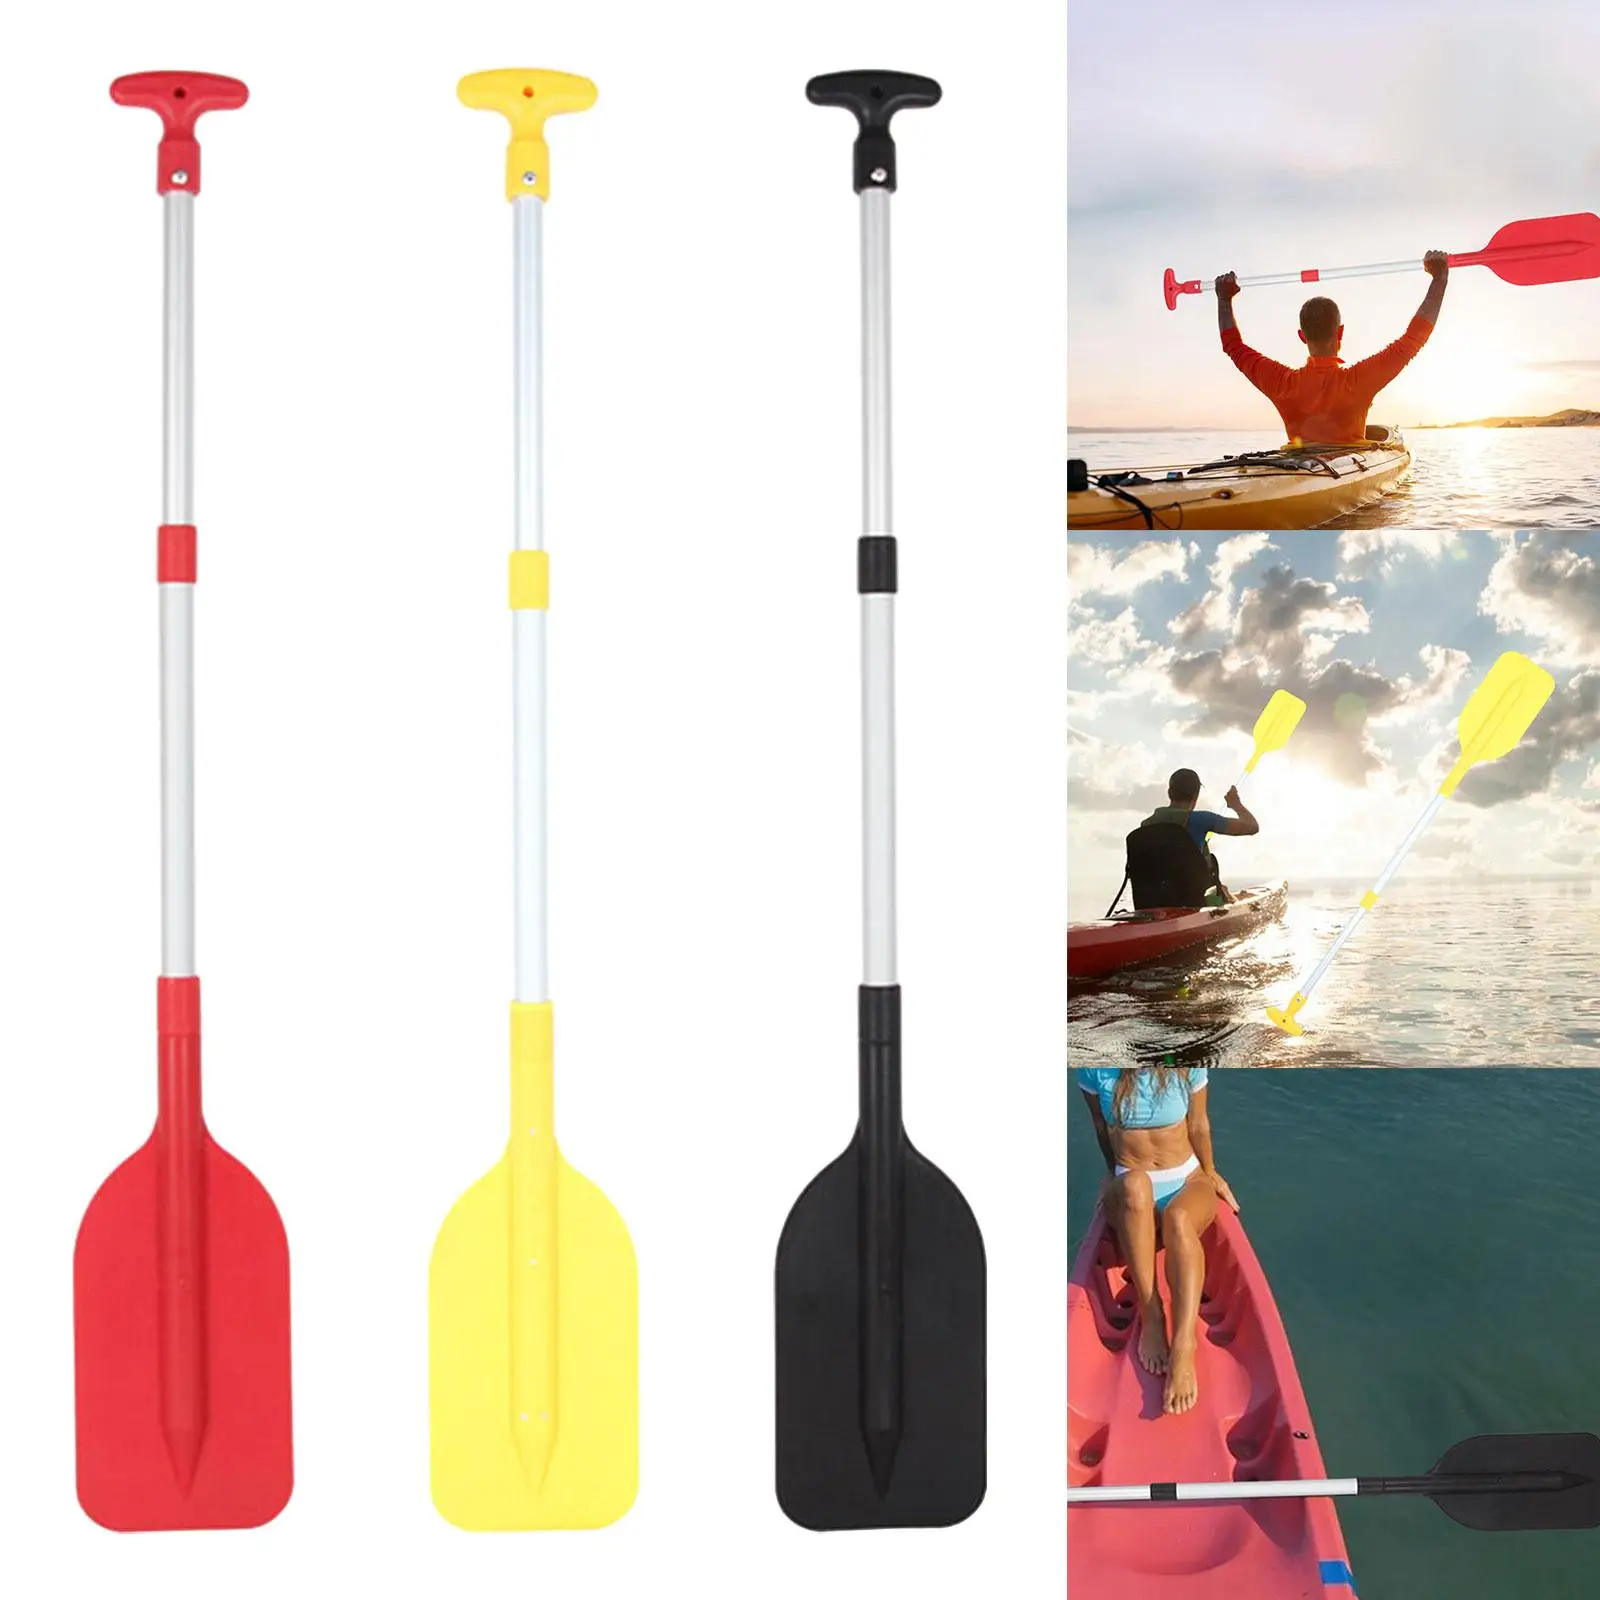 Kayak Paddle, Canoe Paddle, Folding Flexible Boat Oars, Float Boat Paddle for